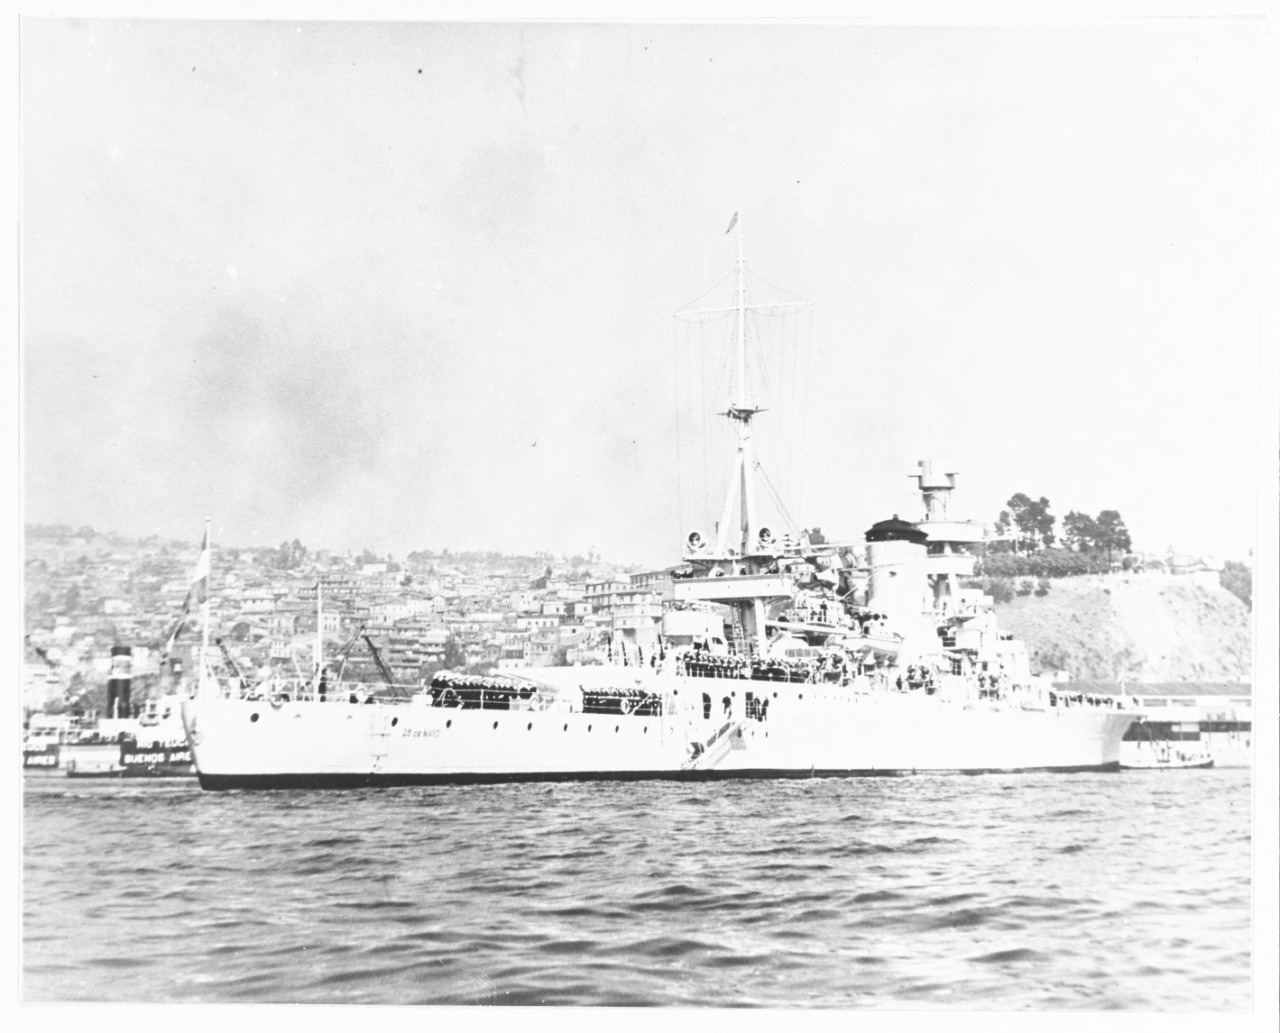 25 DE MAYO (Argentine Cruiser, 1929)